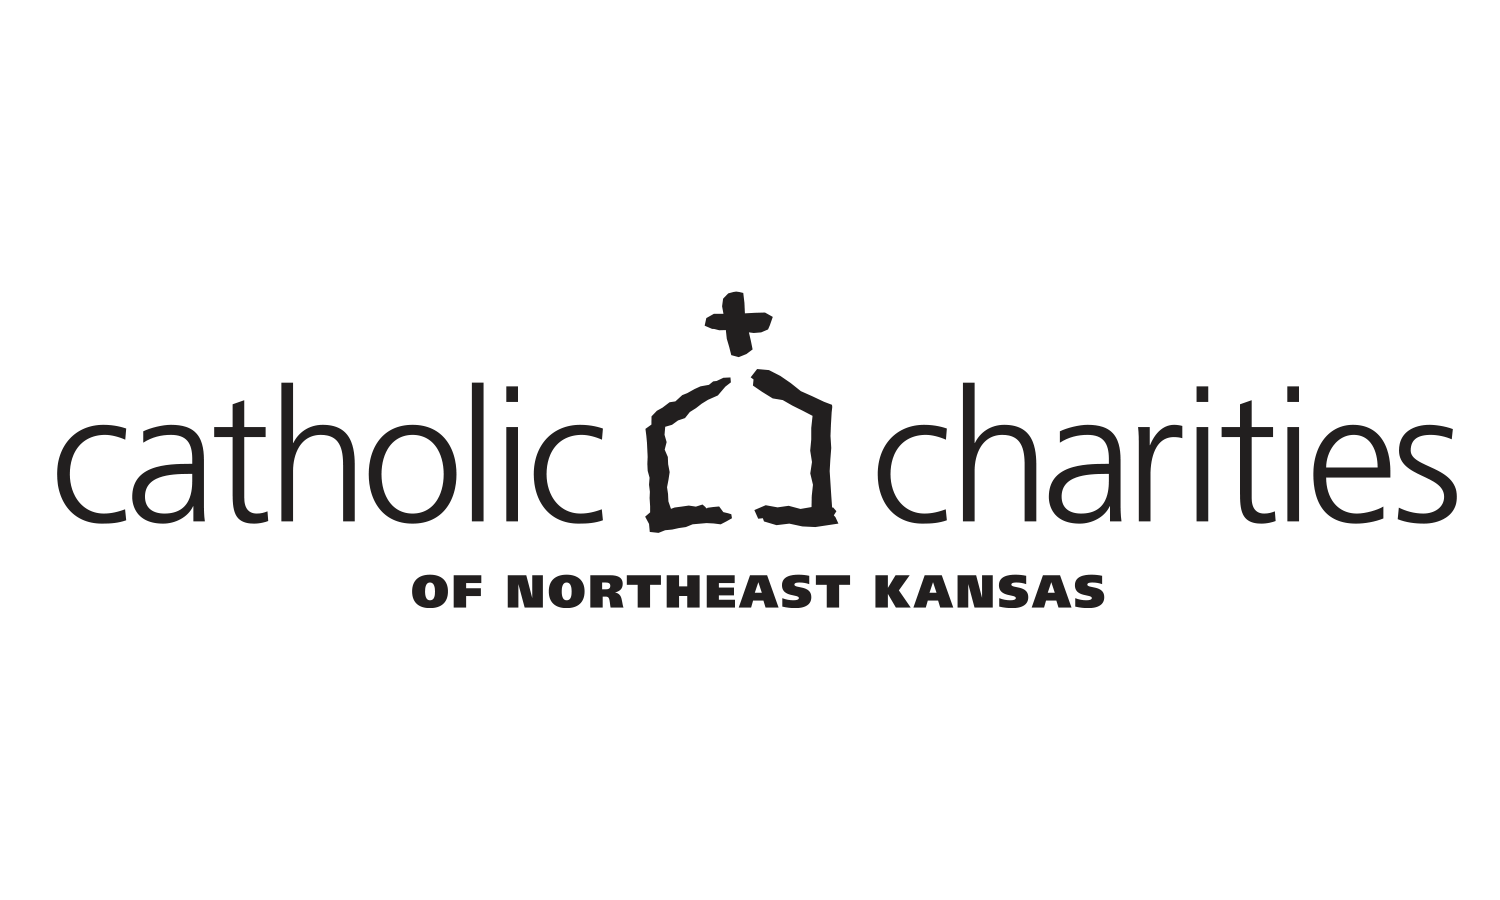 Catholic-Charities